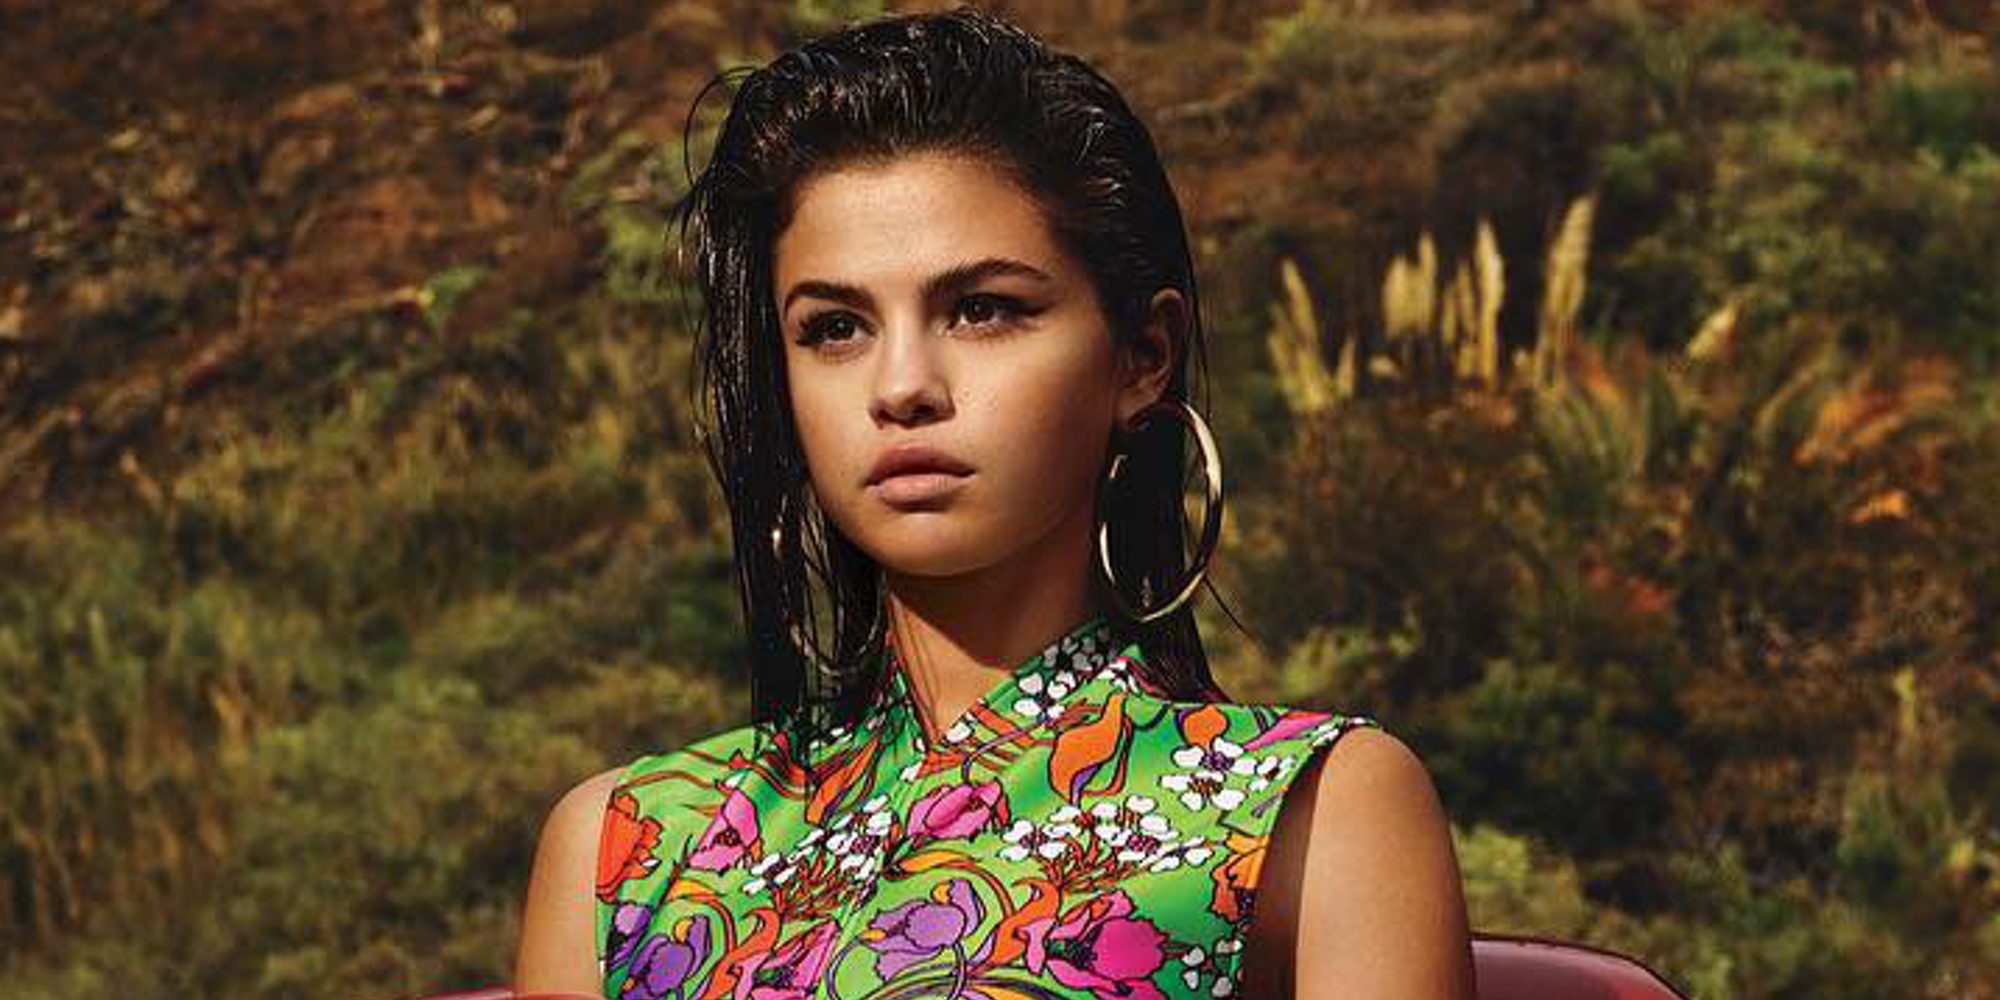 Selena Gomez regresa por todo lo alto envuelta en una gran polémica con 'Bad Liar'